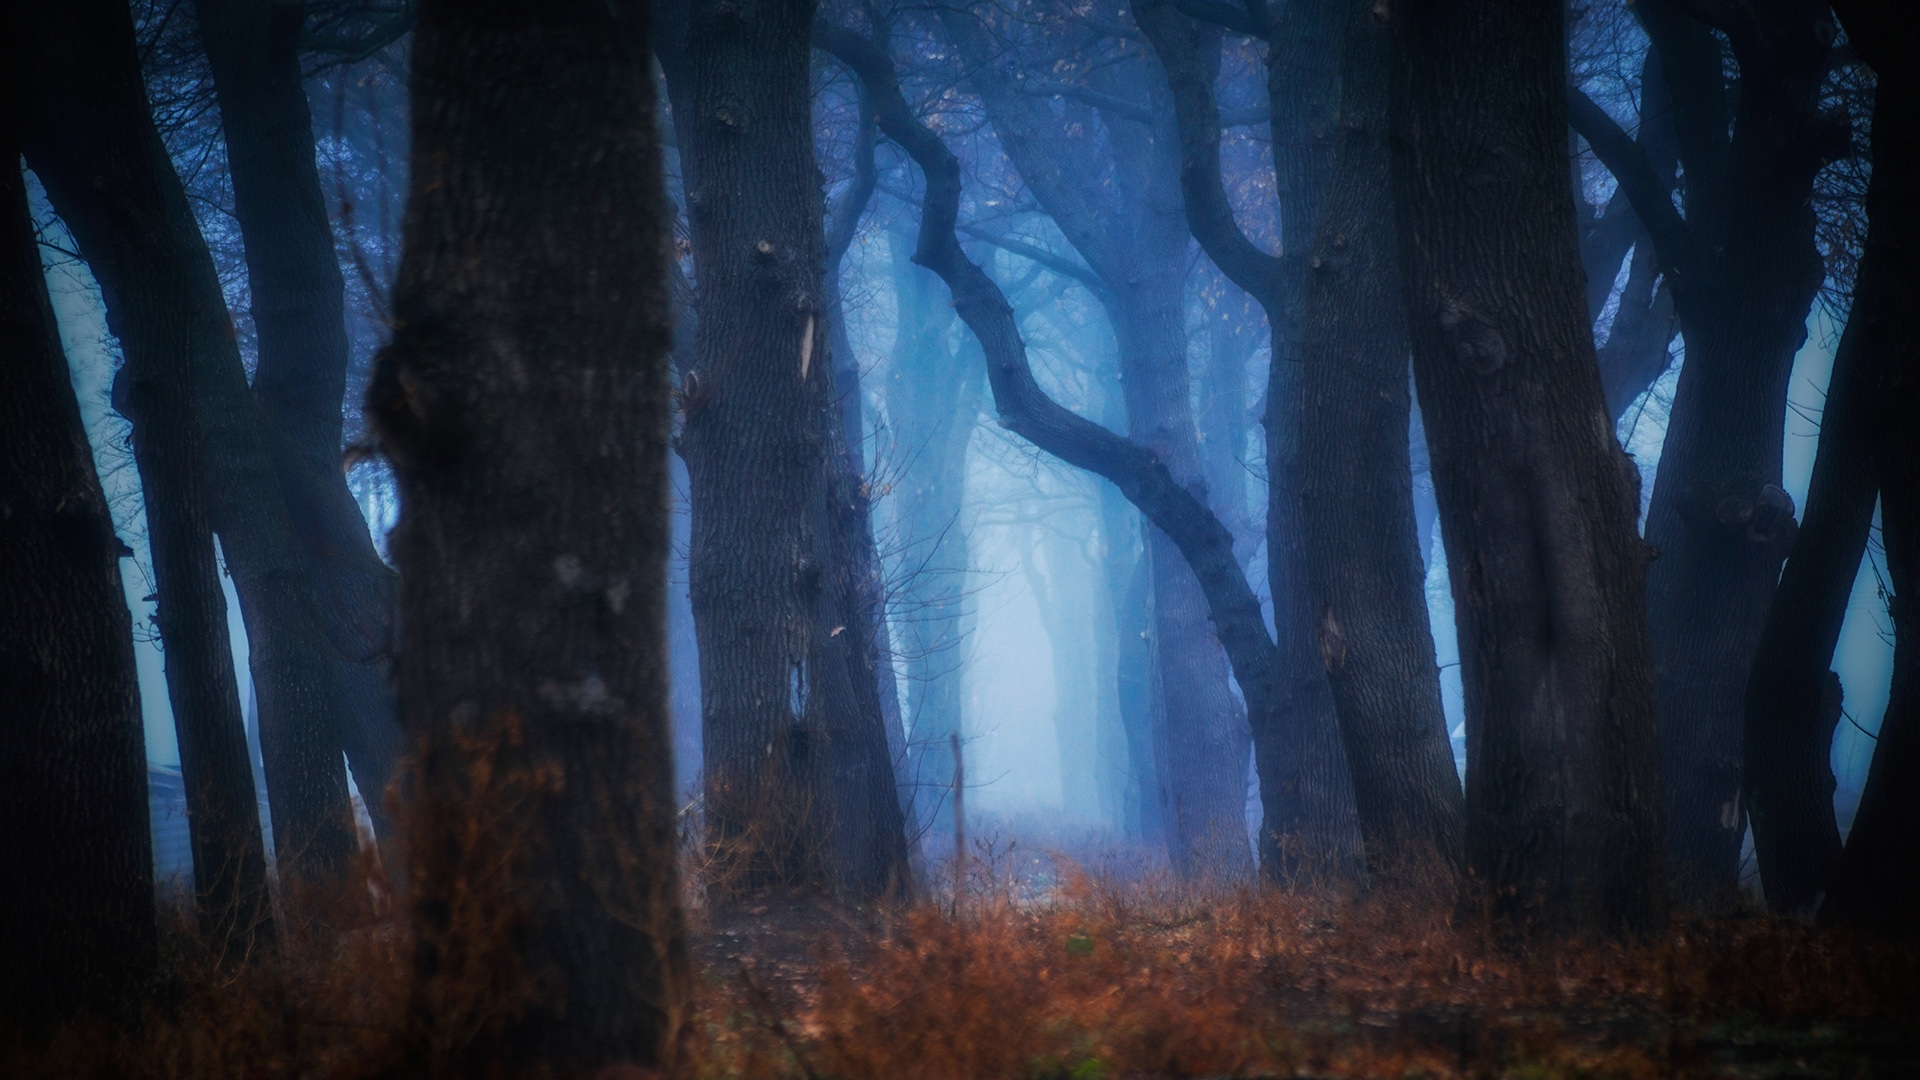 The gloomy, foggy forest